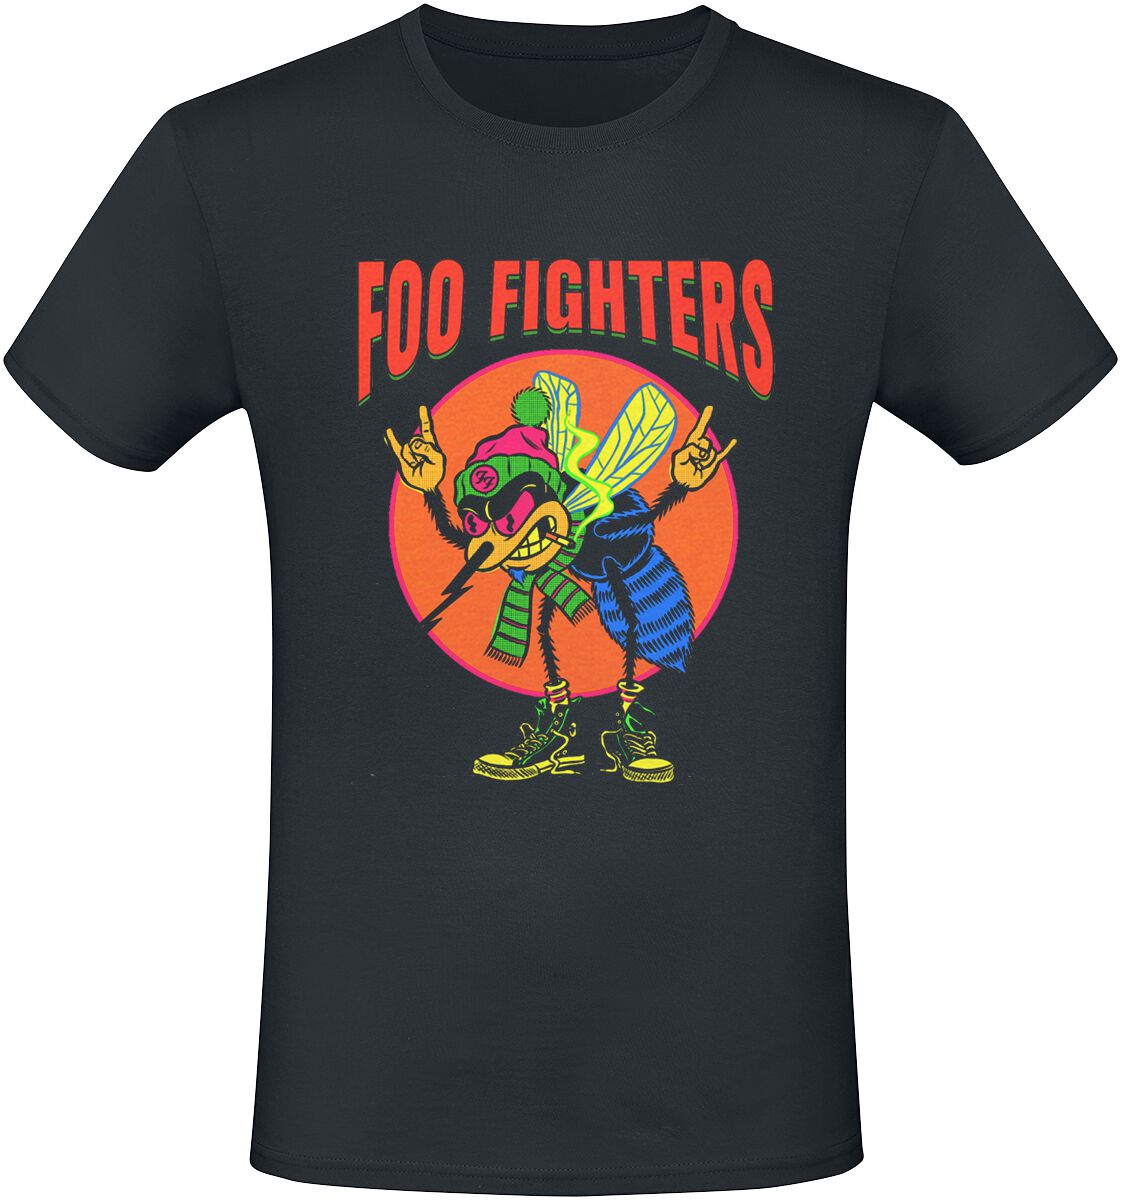 Foo Fighters T-Shirt - Mosquito - S bis 3XL - für Männer - Größe S - schwarz  - Lizenziertes Merchandise!